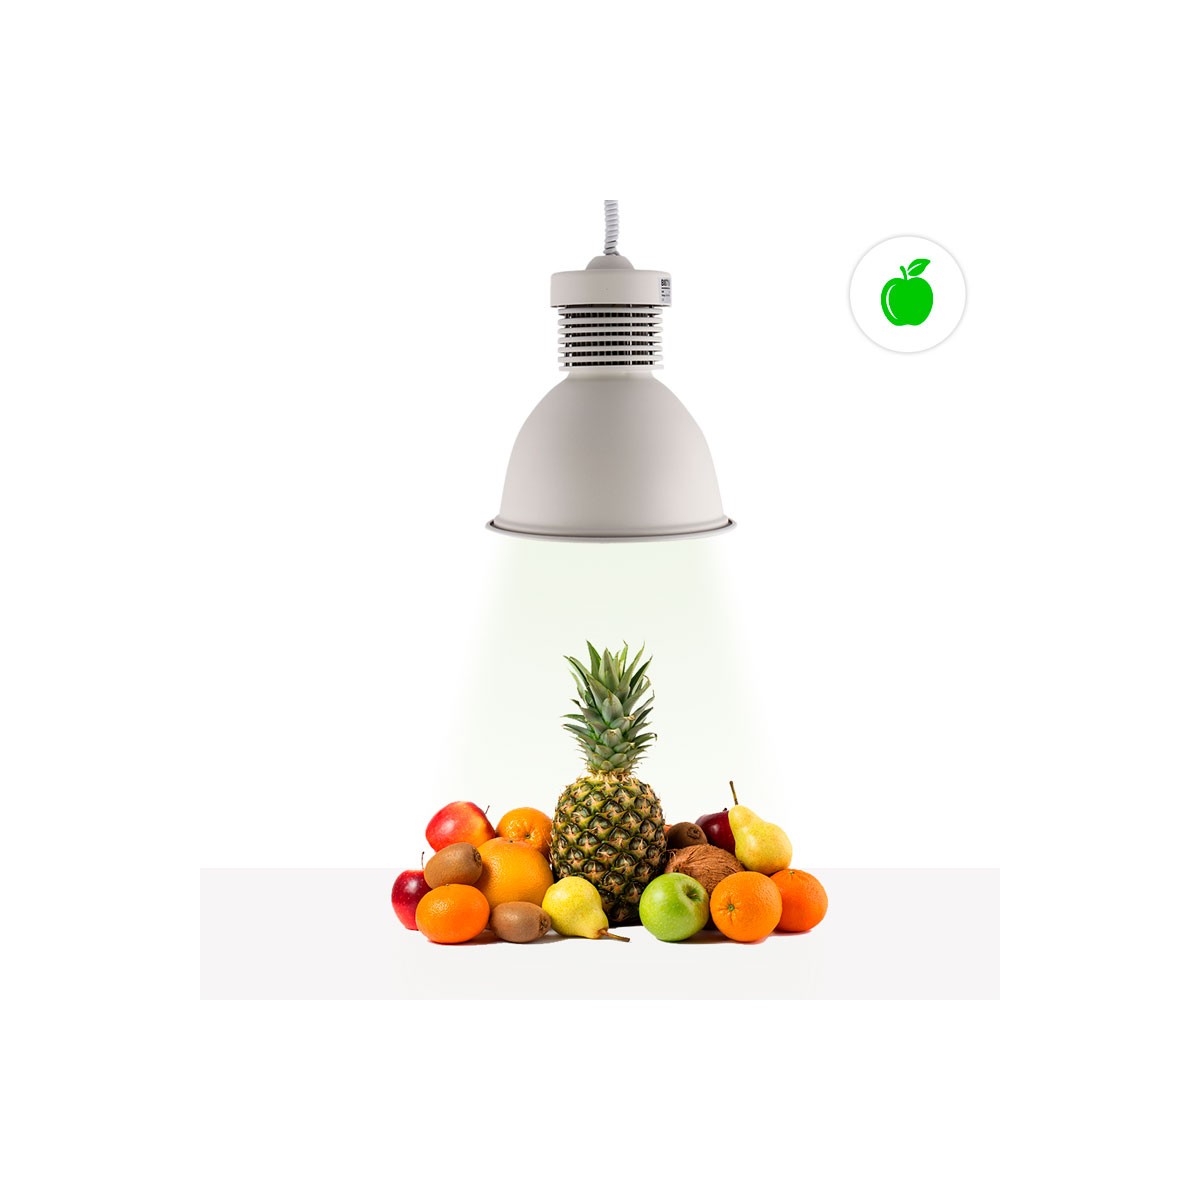 Lampara Campana LED 30W especial para fruterías y verdulerías